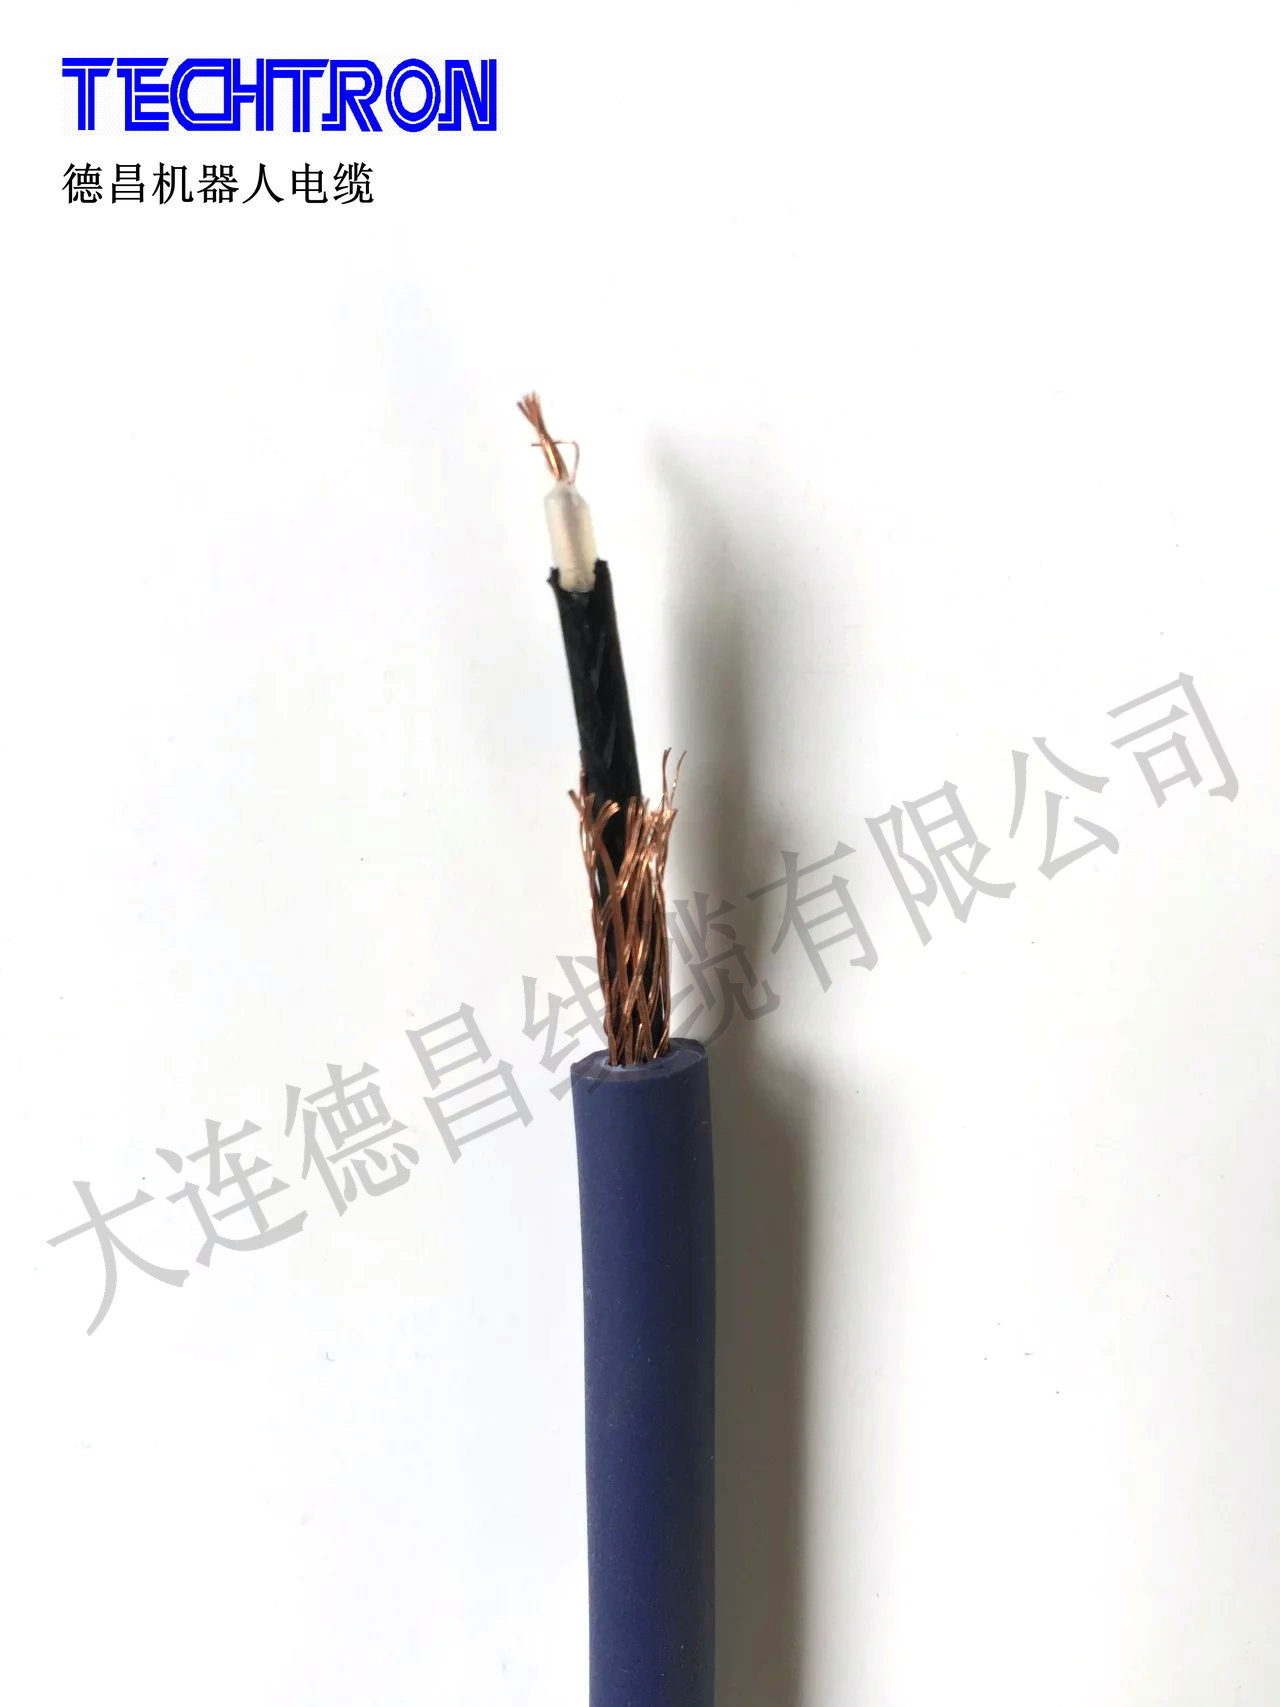 德昌 COAXIAL CABLE 音视频电缆 1.5C-2VS 厂家直供电线电缆